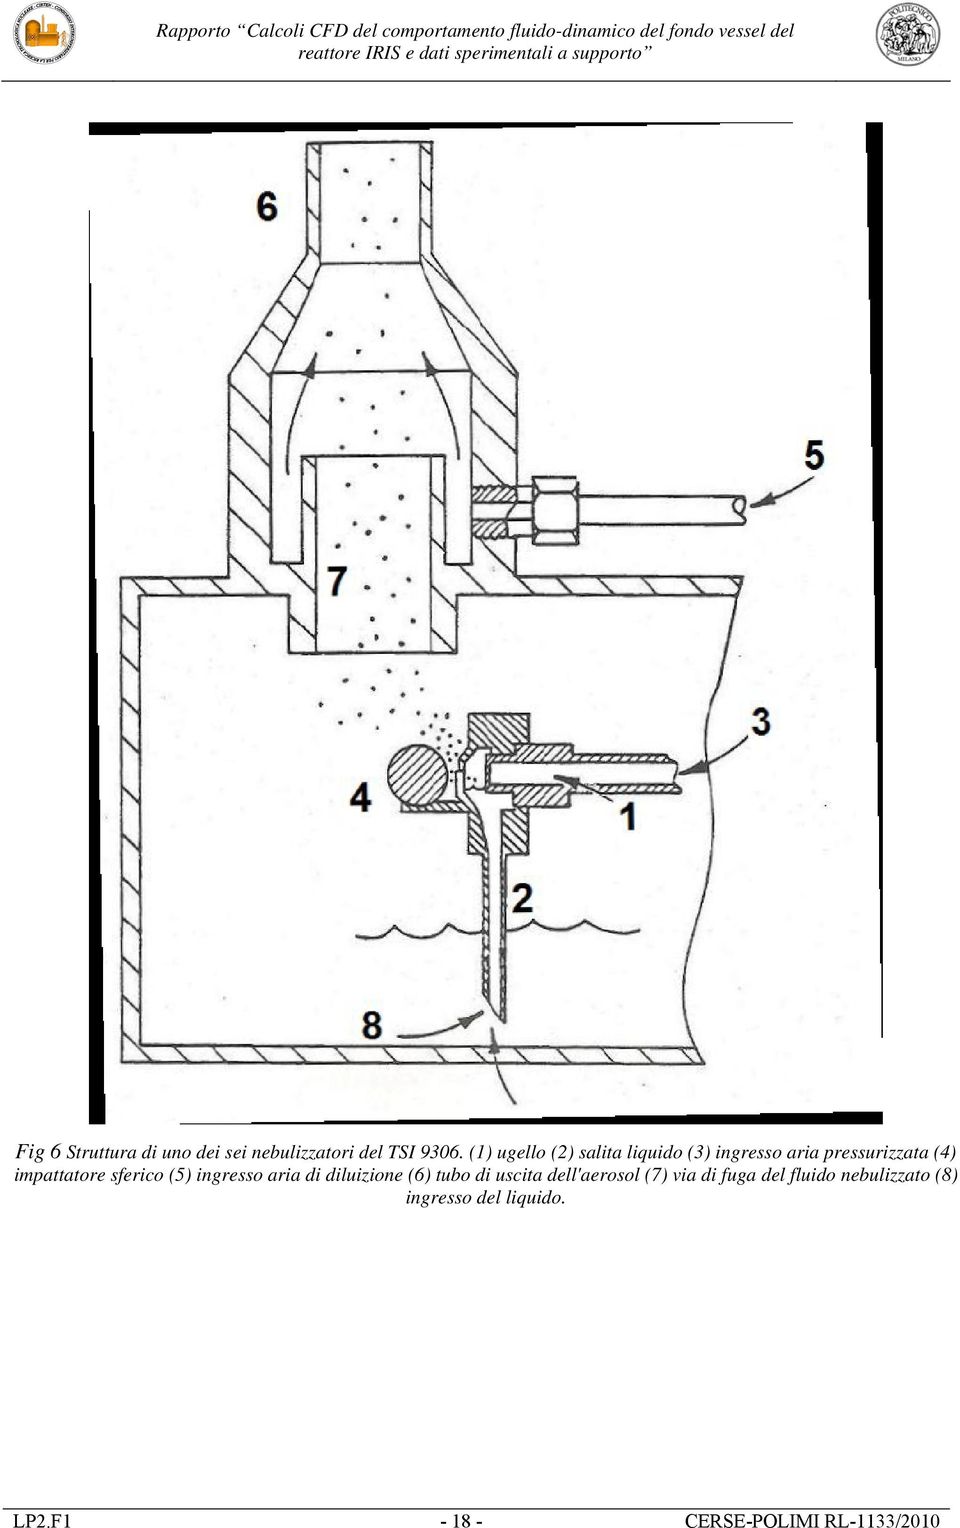 sferico (5) ingresso aria di diluizione (6) tubo di uscita dell'aerosol (7)